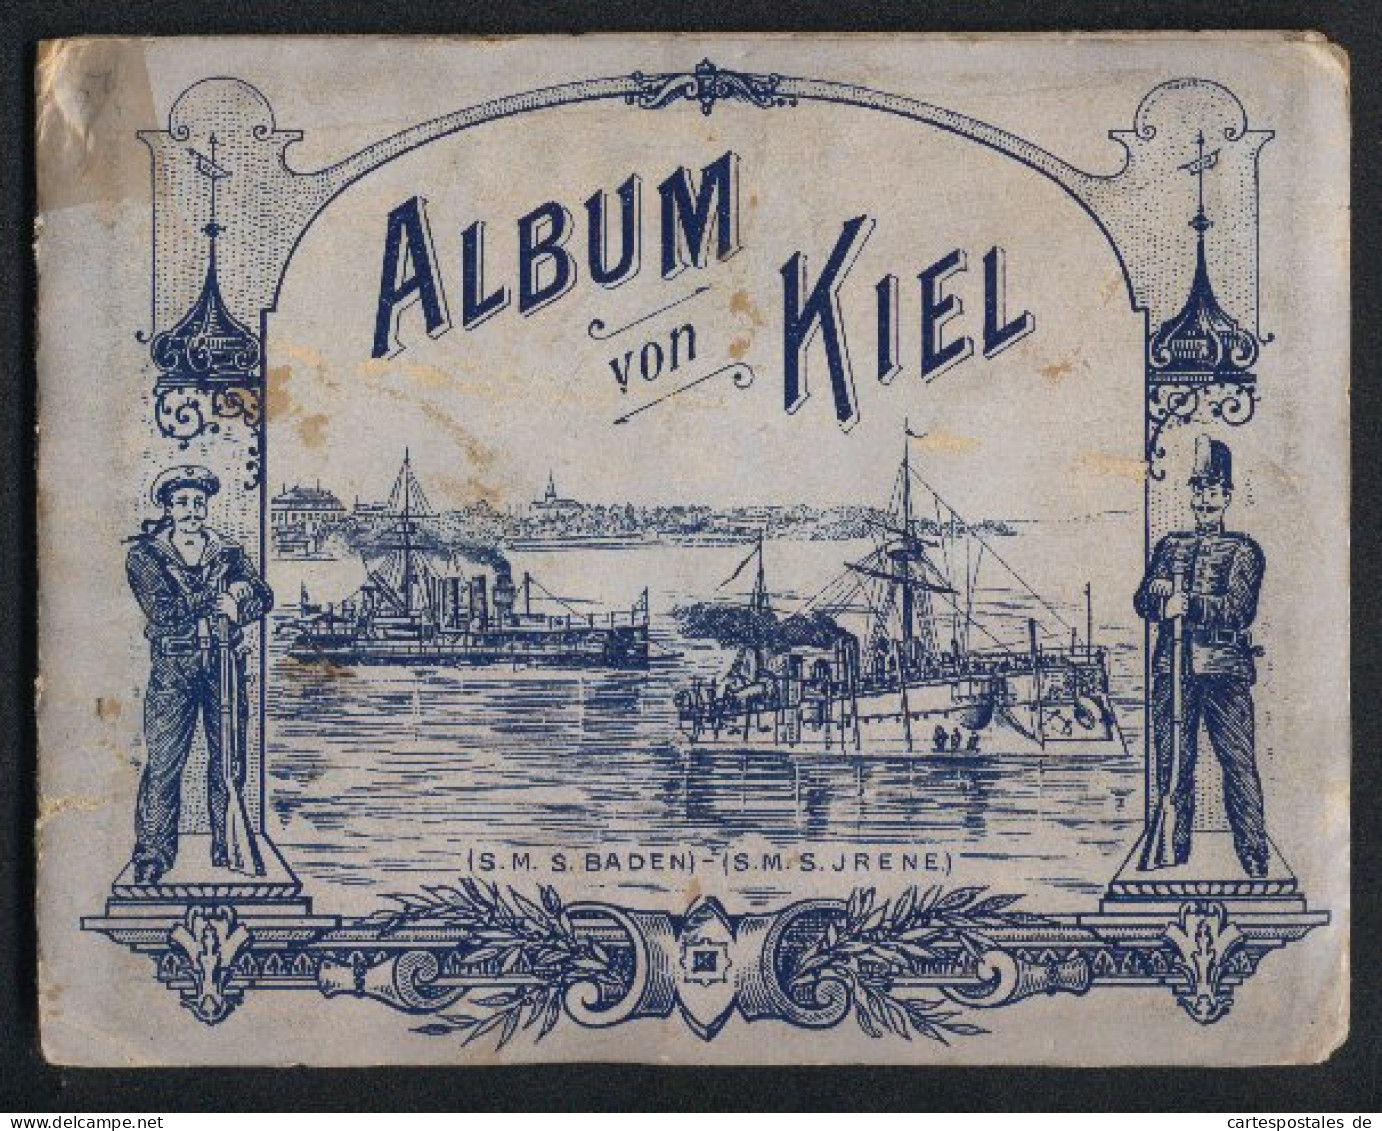 Leporello-Album Kiel Mit 13 Lithographie-Ansichten, Kaiserliche Werft, Panorama Mit Kriegshafen, Marine Akademie, Uni  - Lithographien